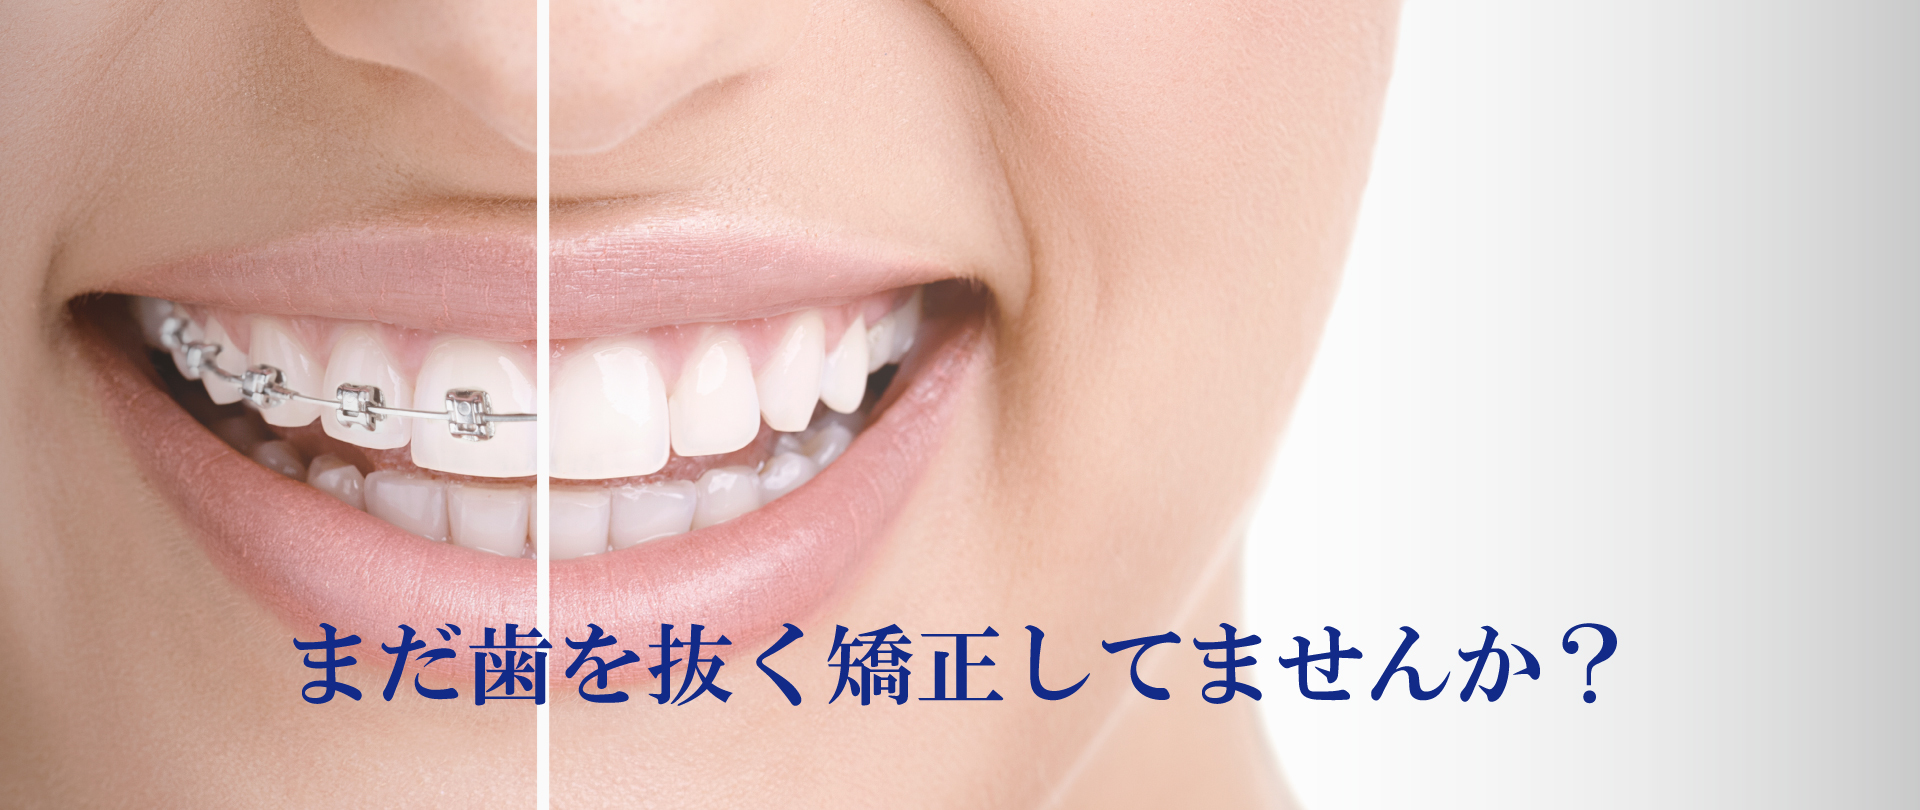 広島で「安い・人気・おすすめ」の抜かない矯正専門歯科医院 子供の矯正 子どもの矯正 小児矯正